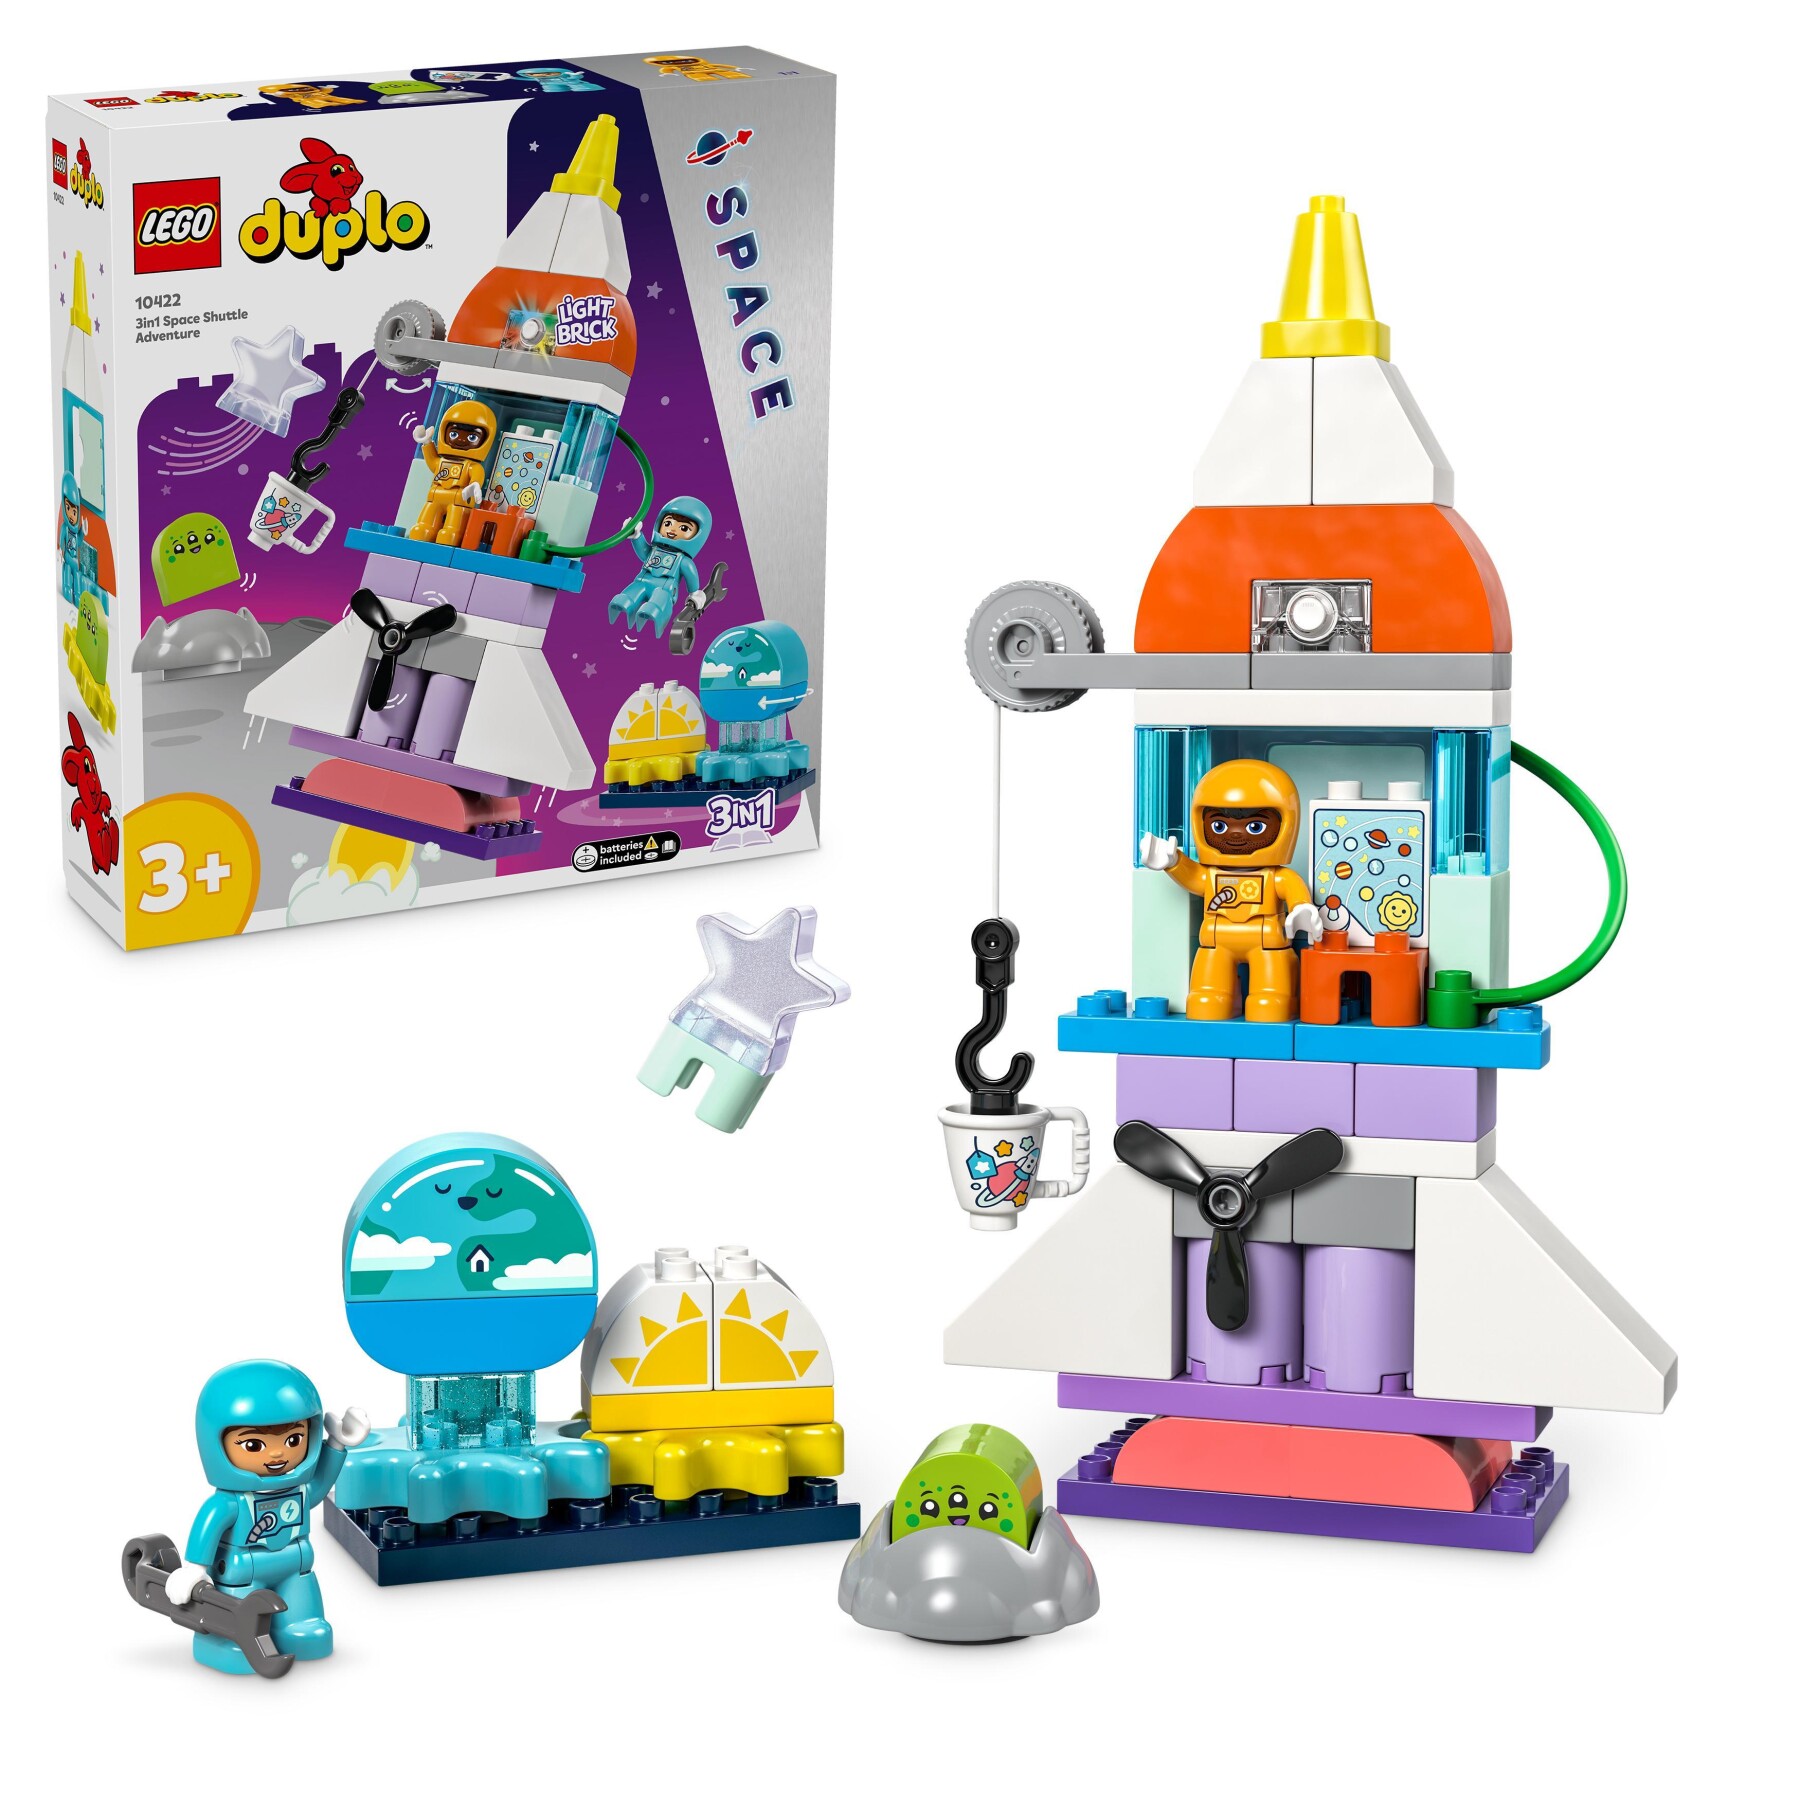 Lego duplo 10422 avventura dello space shuttle 3 in 1, astronave giocattolo didattica, gioco educativo per bambini di 3+ anni - LEGO DUPLO